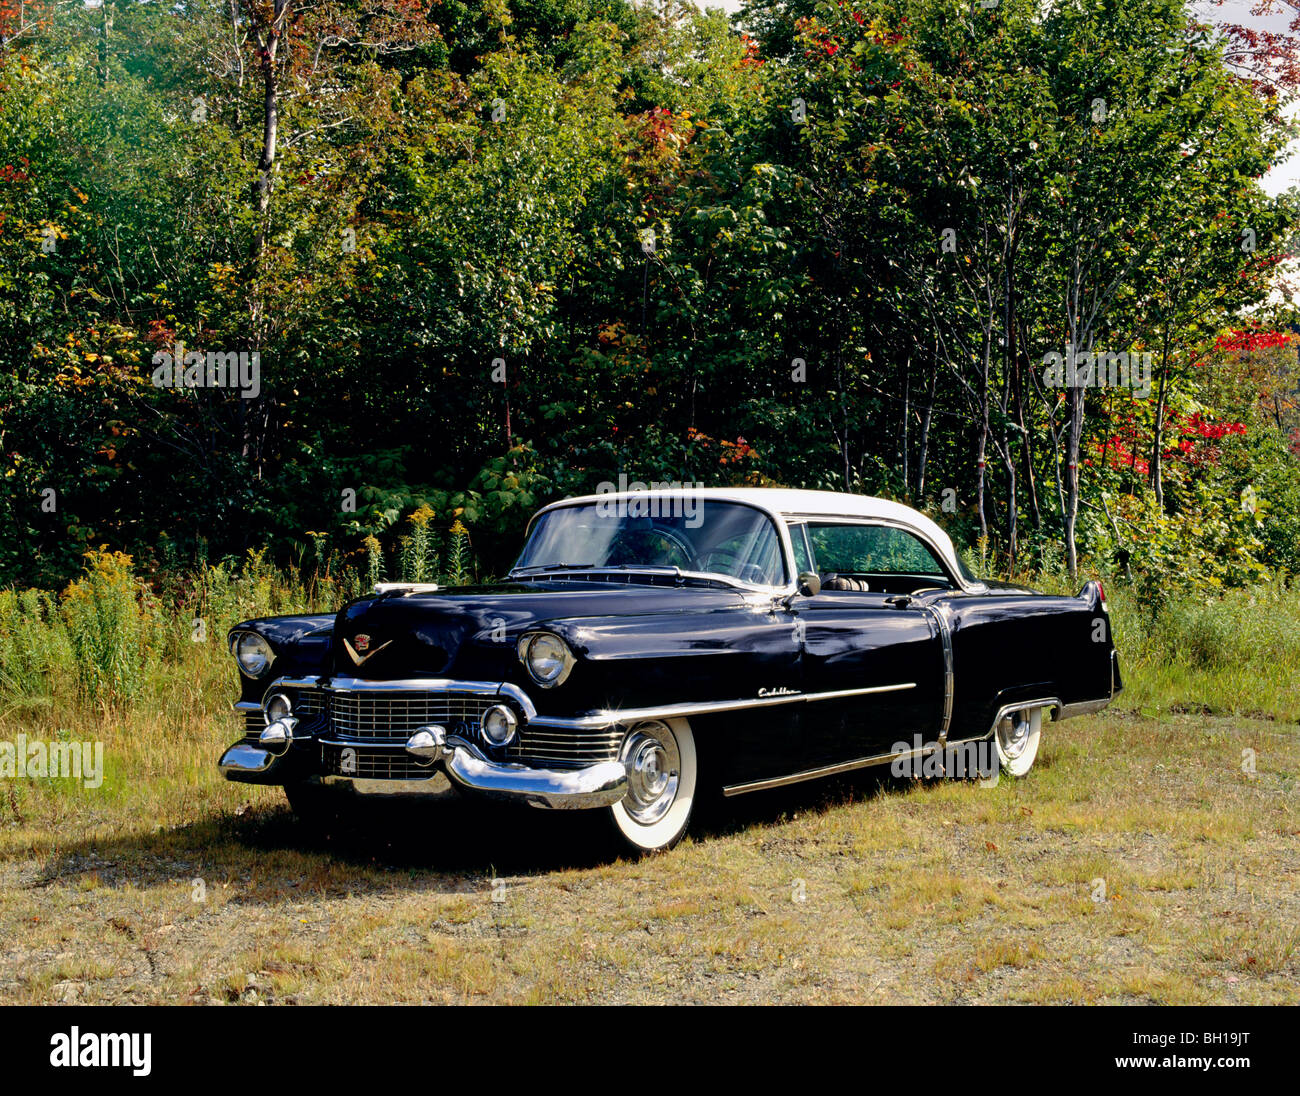 Vintage 1954 Cadillac Eldorado 62 voiture, Waterloo, Québec, Canada Banque D'Images